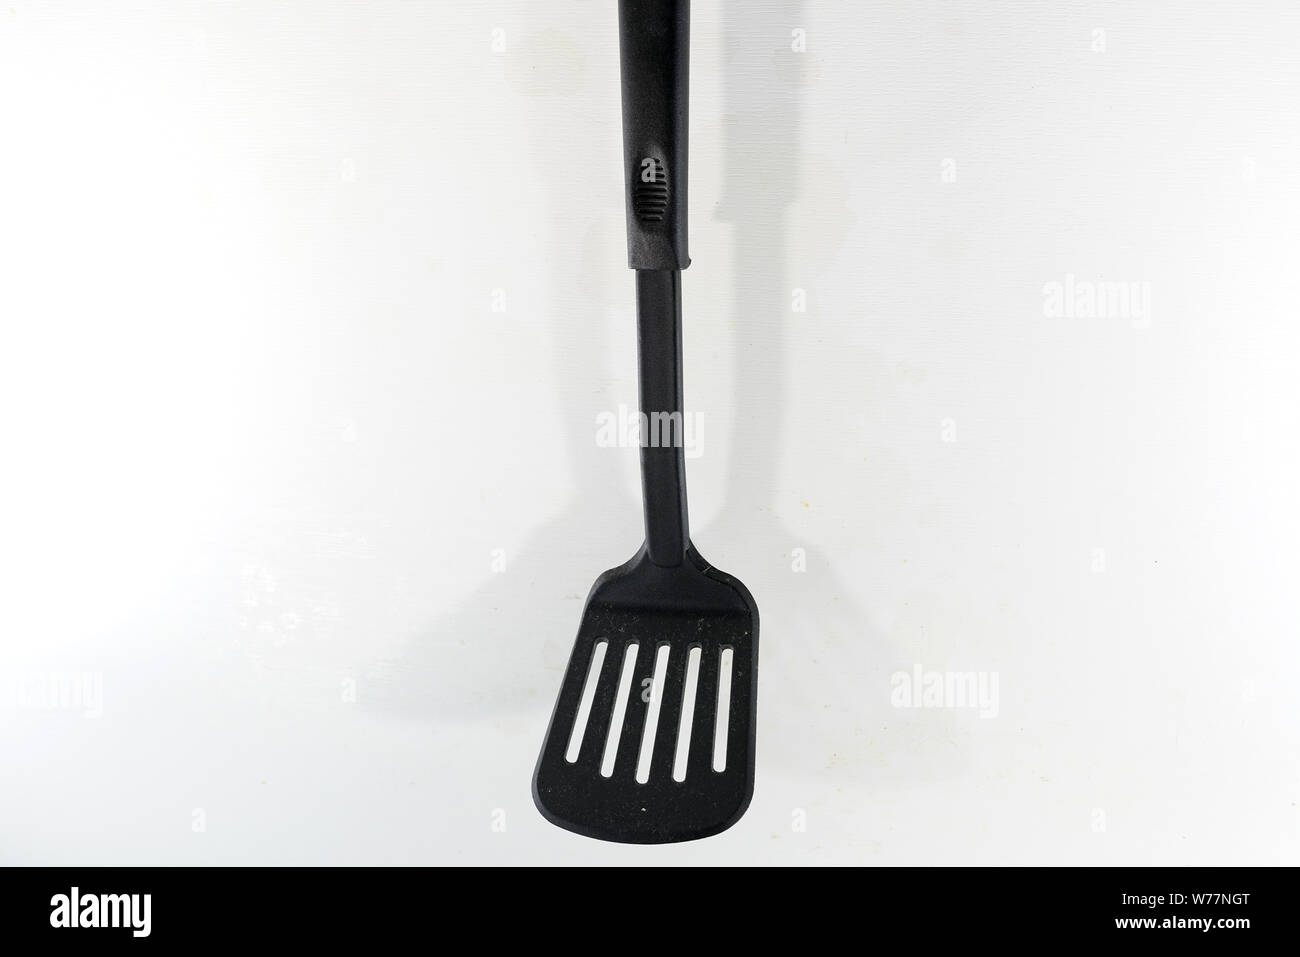 Une spatule, couteau, pan aussi Turner, sous la pelle, le rôtissage turner, poêle, cuisine ou ami, est un appareil de cuisine pour transformer les aliments Banque D'Images